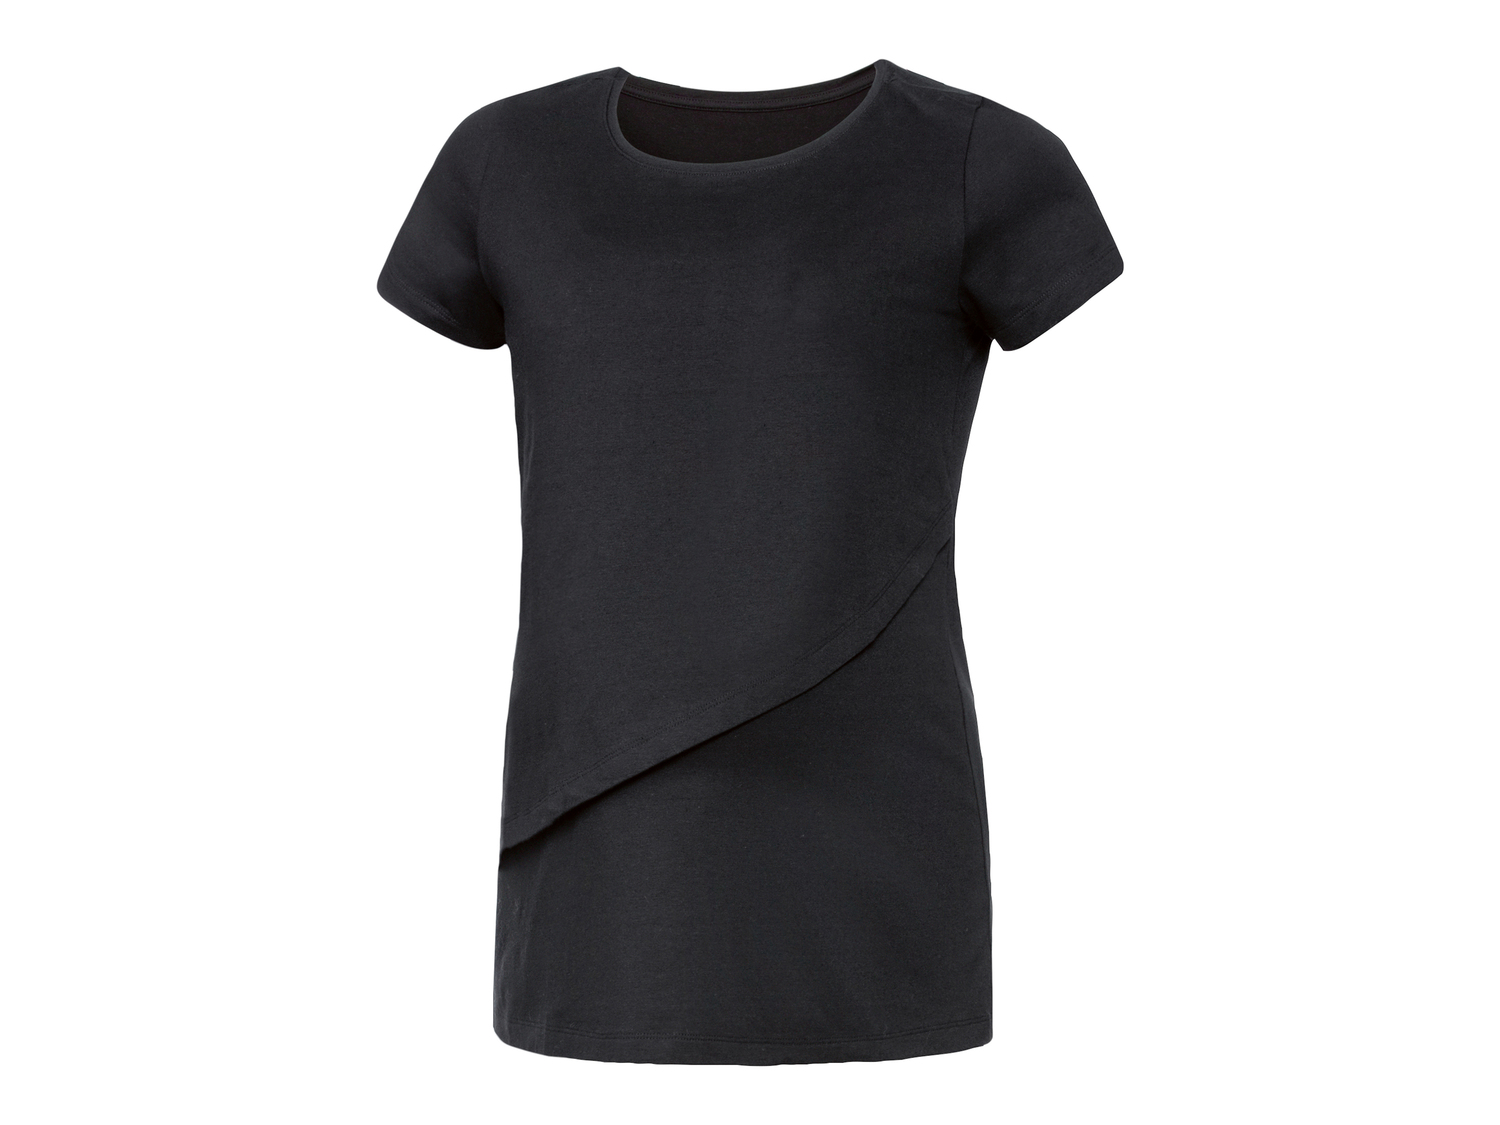 T-shirt premaman Esmara Lingerie, prezzo 6.99 &#8364; 
Misure: S-L 
- Con cotone ...